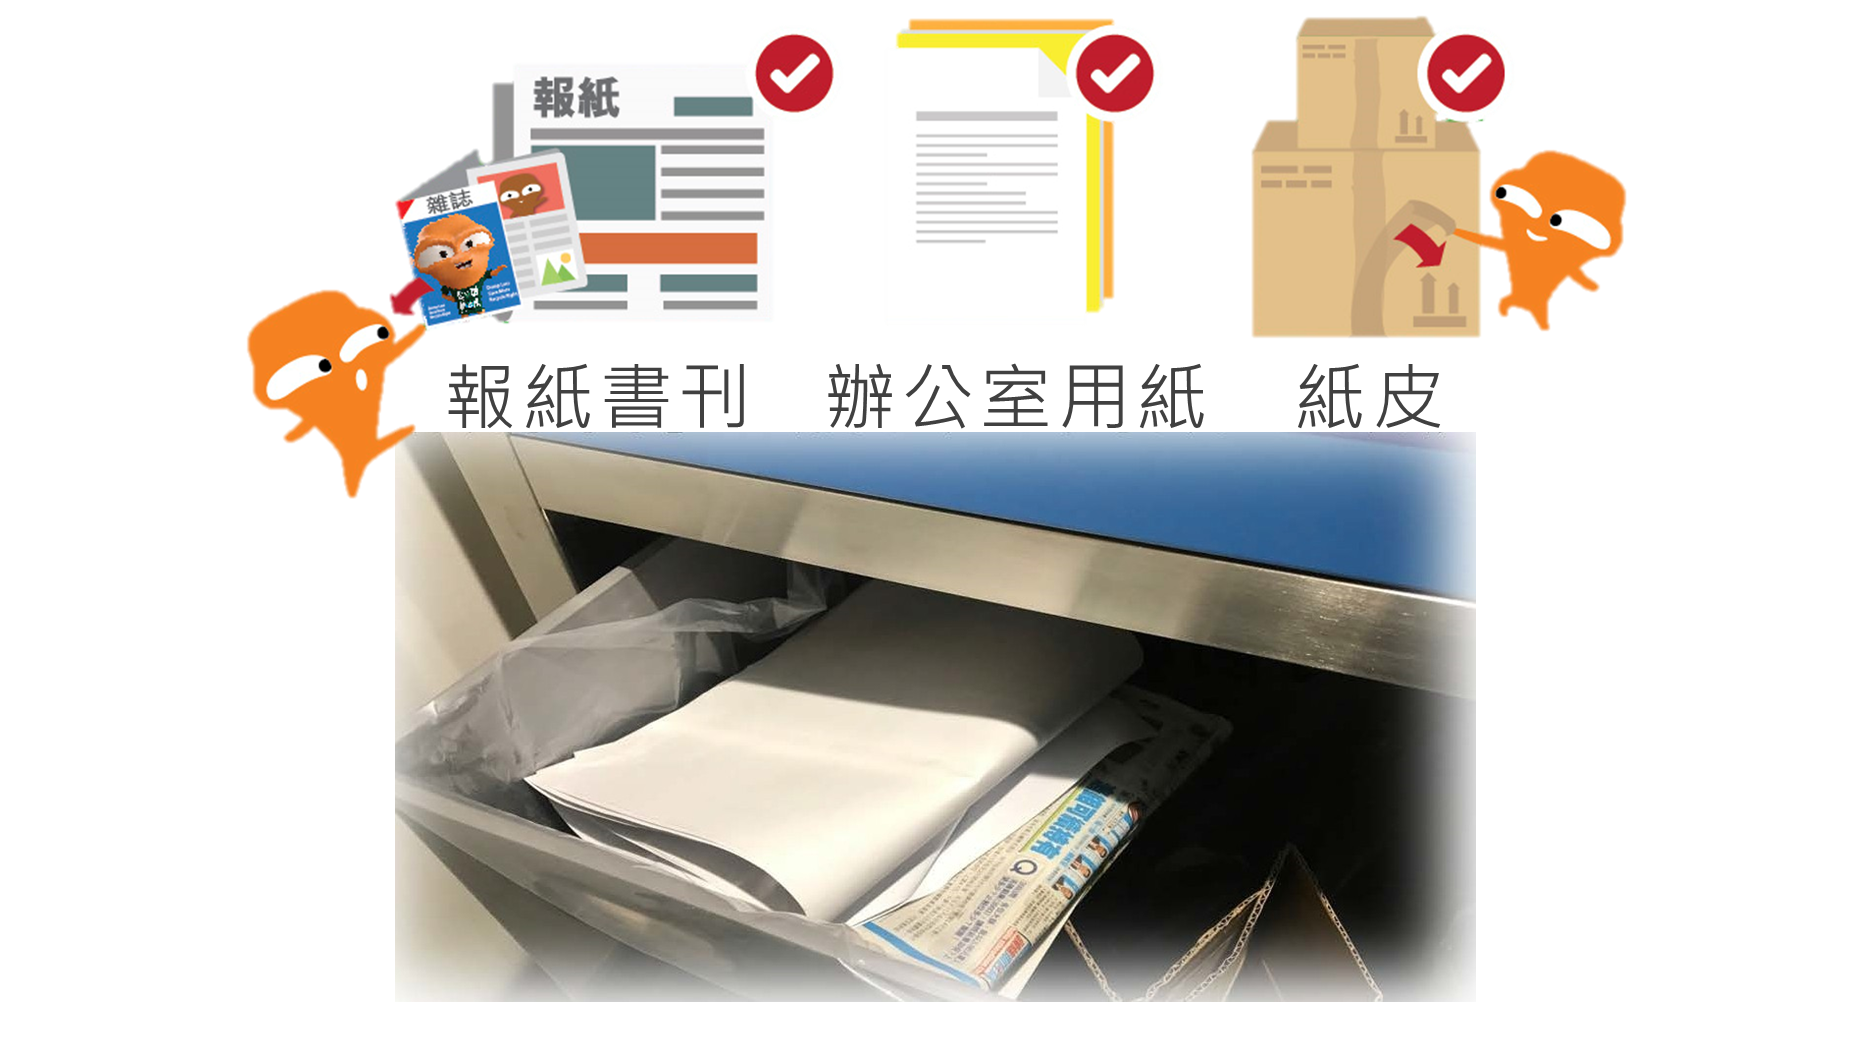 乾淨回收報紙書刊,辦公室用紙及紙皮的貼士 - 去膠紙,除雜質,咪濕水